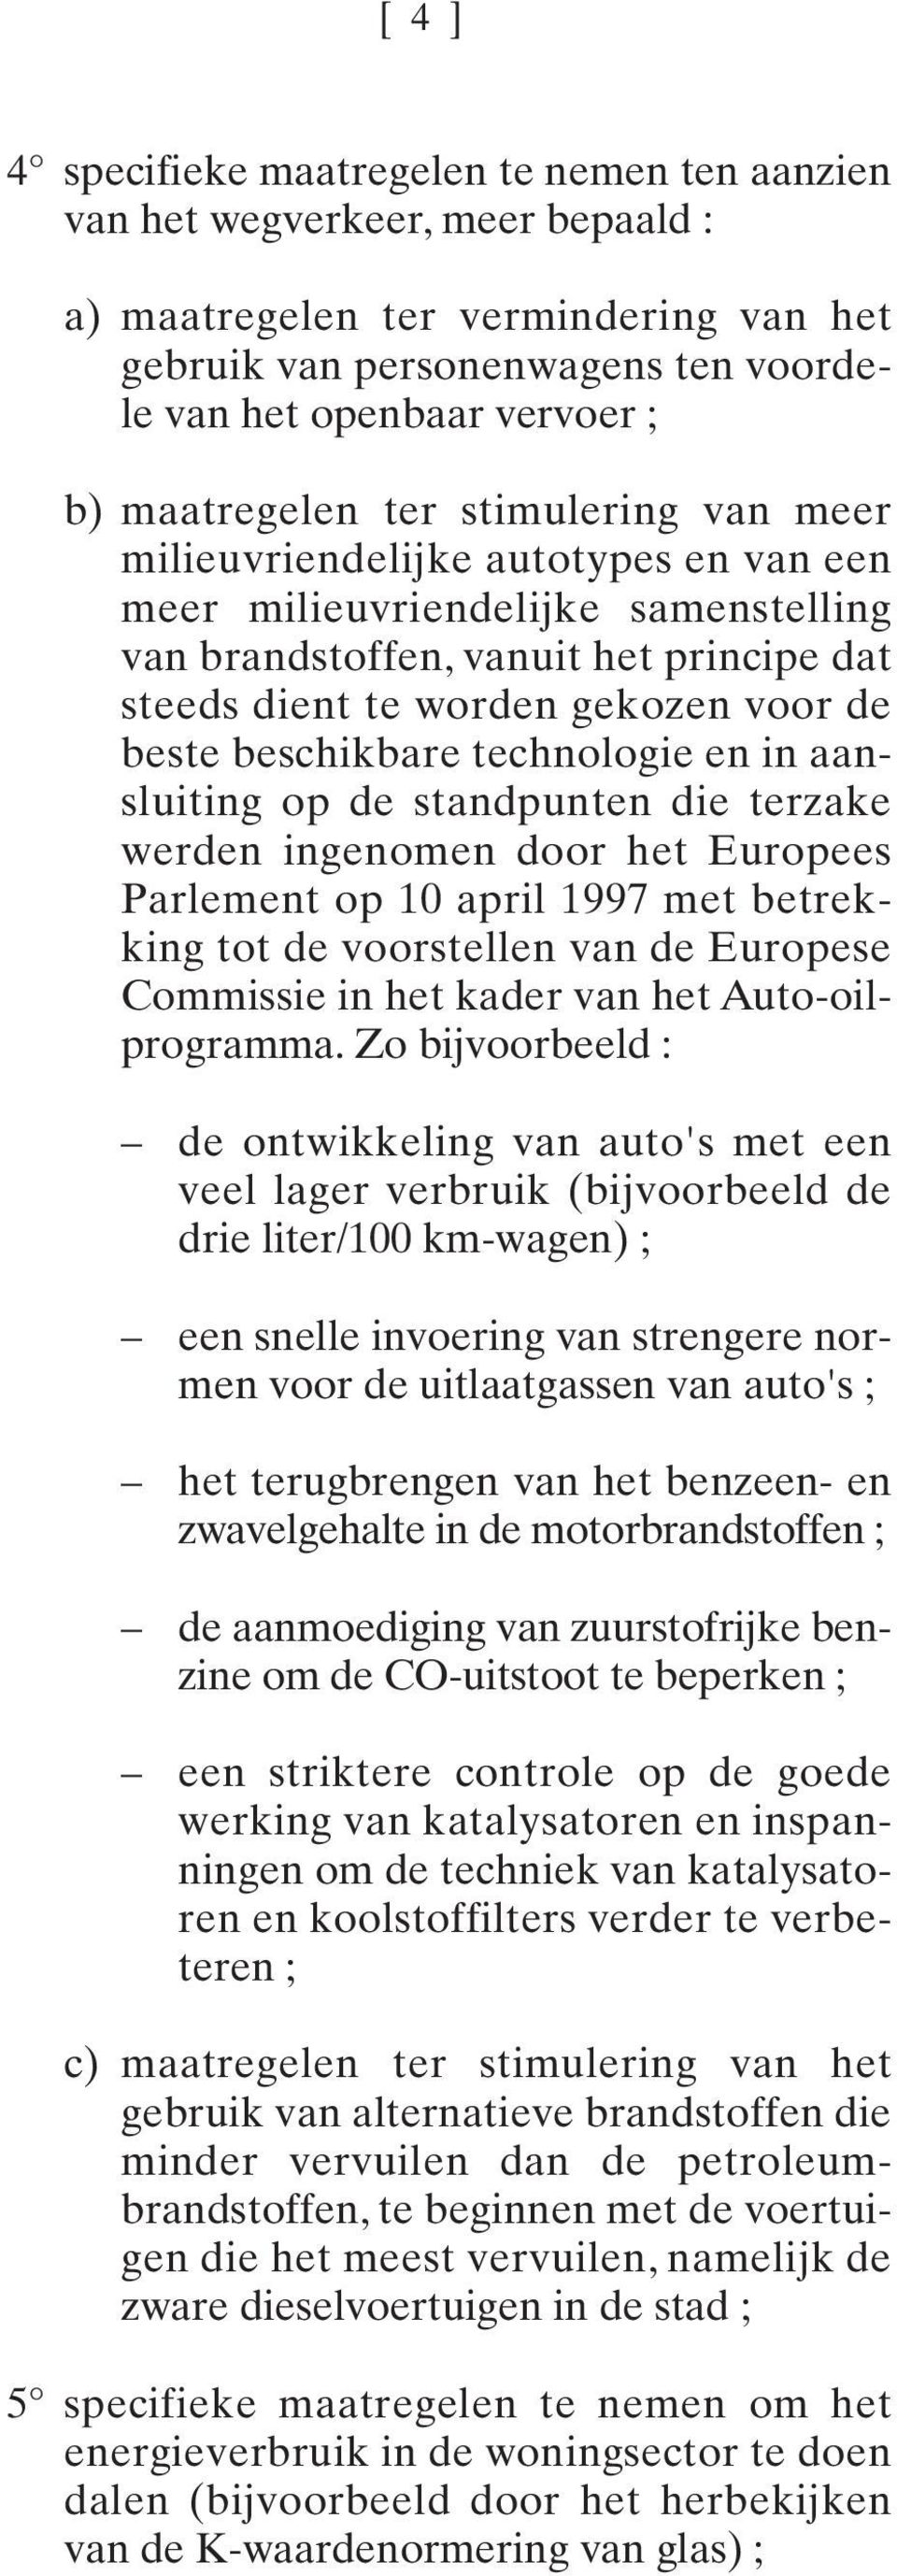 aansluiting op de standpunt die terzake werd ingom door het Europees Parlemt op 10 april 1997 met betrekking tot de voorstell van de Europese Commissie in het kader van het Auto-oilprogramma.